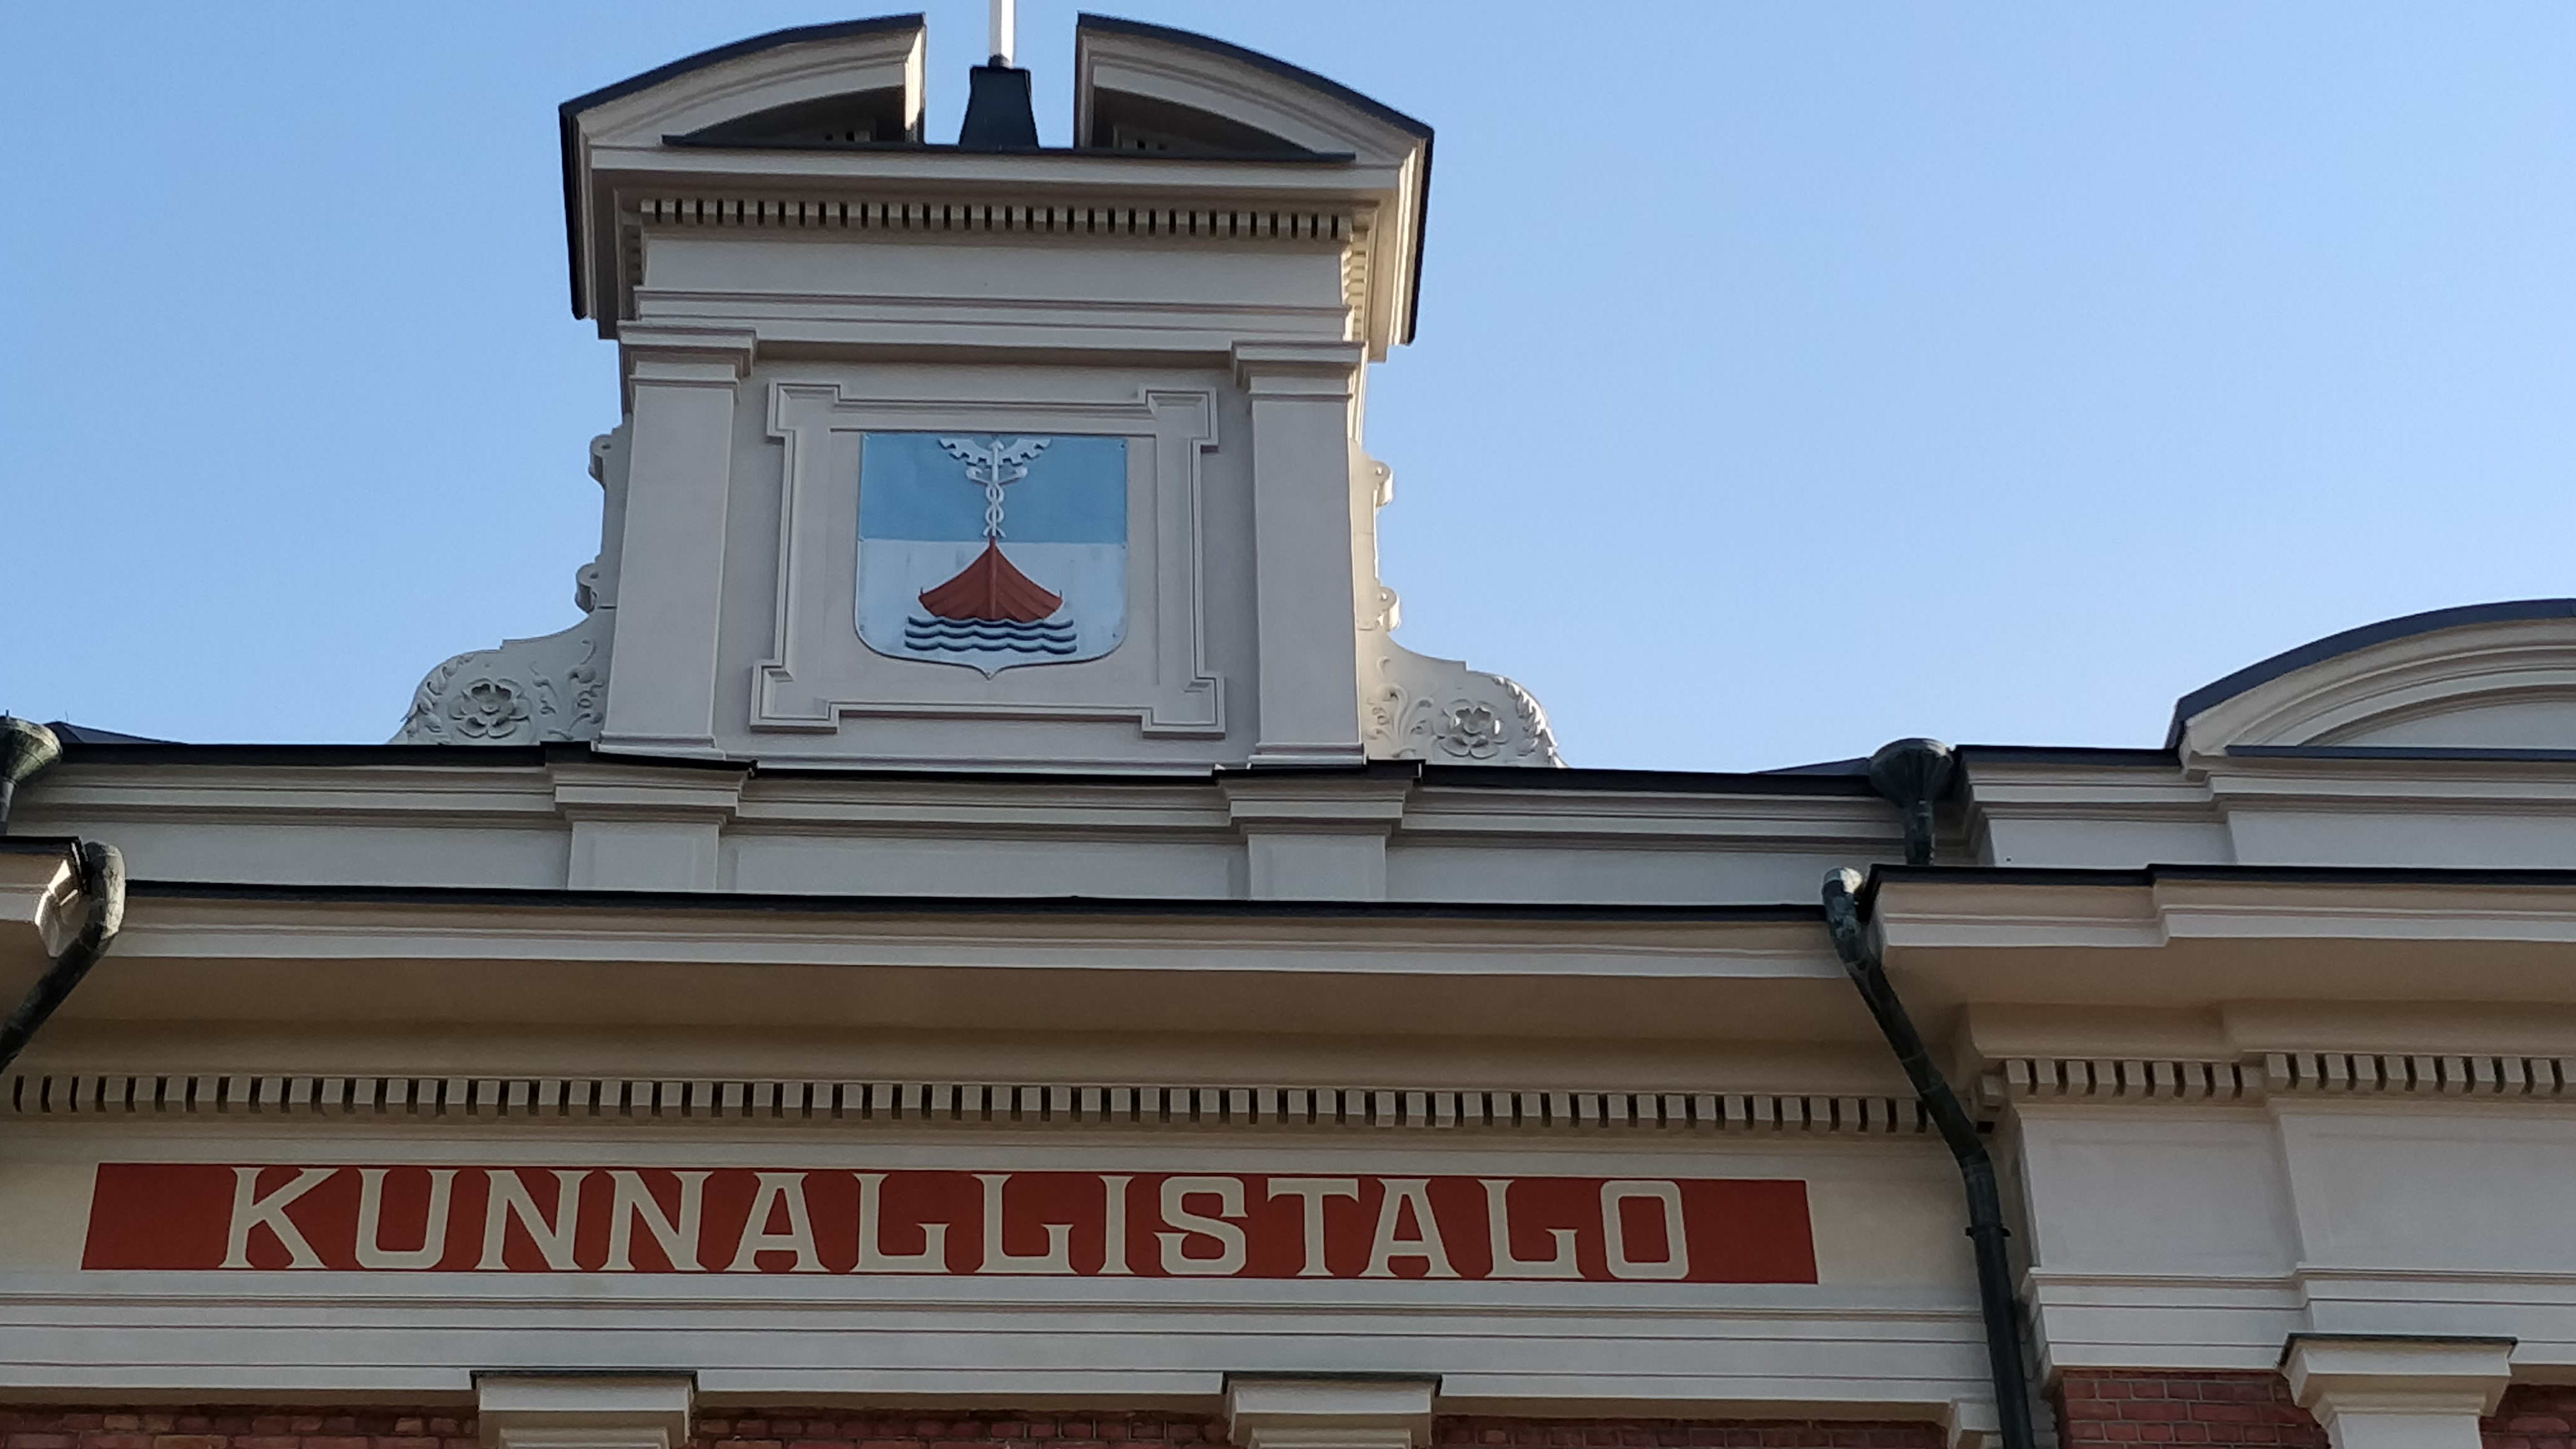 Yksityiskohta Jyväskylän kaupungintalon ulkoseinän yläreunasta, jossa lukee teksti Kunnallistalo. Katolla on myös uloke, jossa on Jyväskylän kaupungin vaakuna.